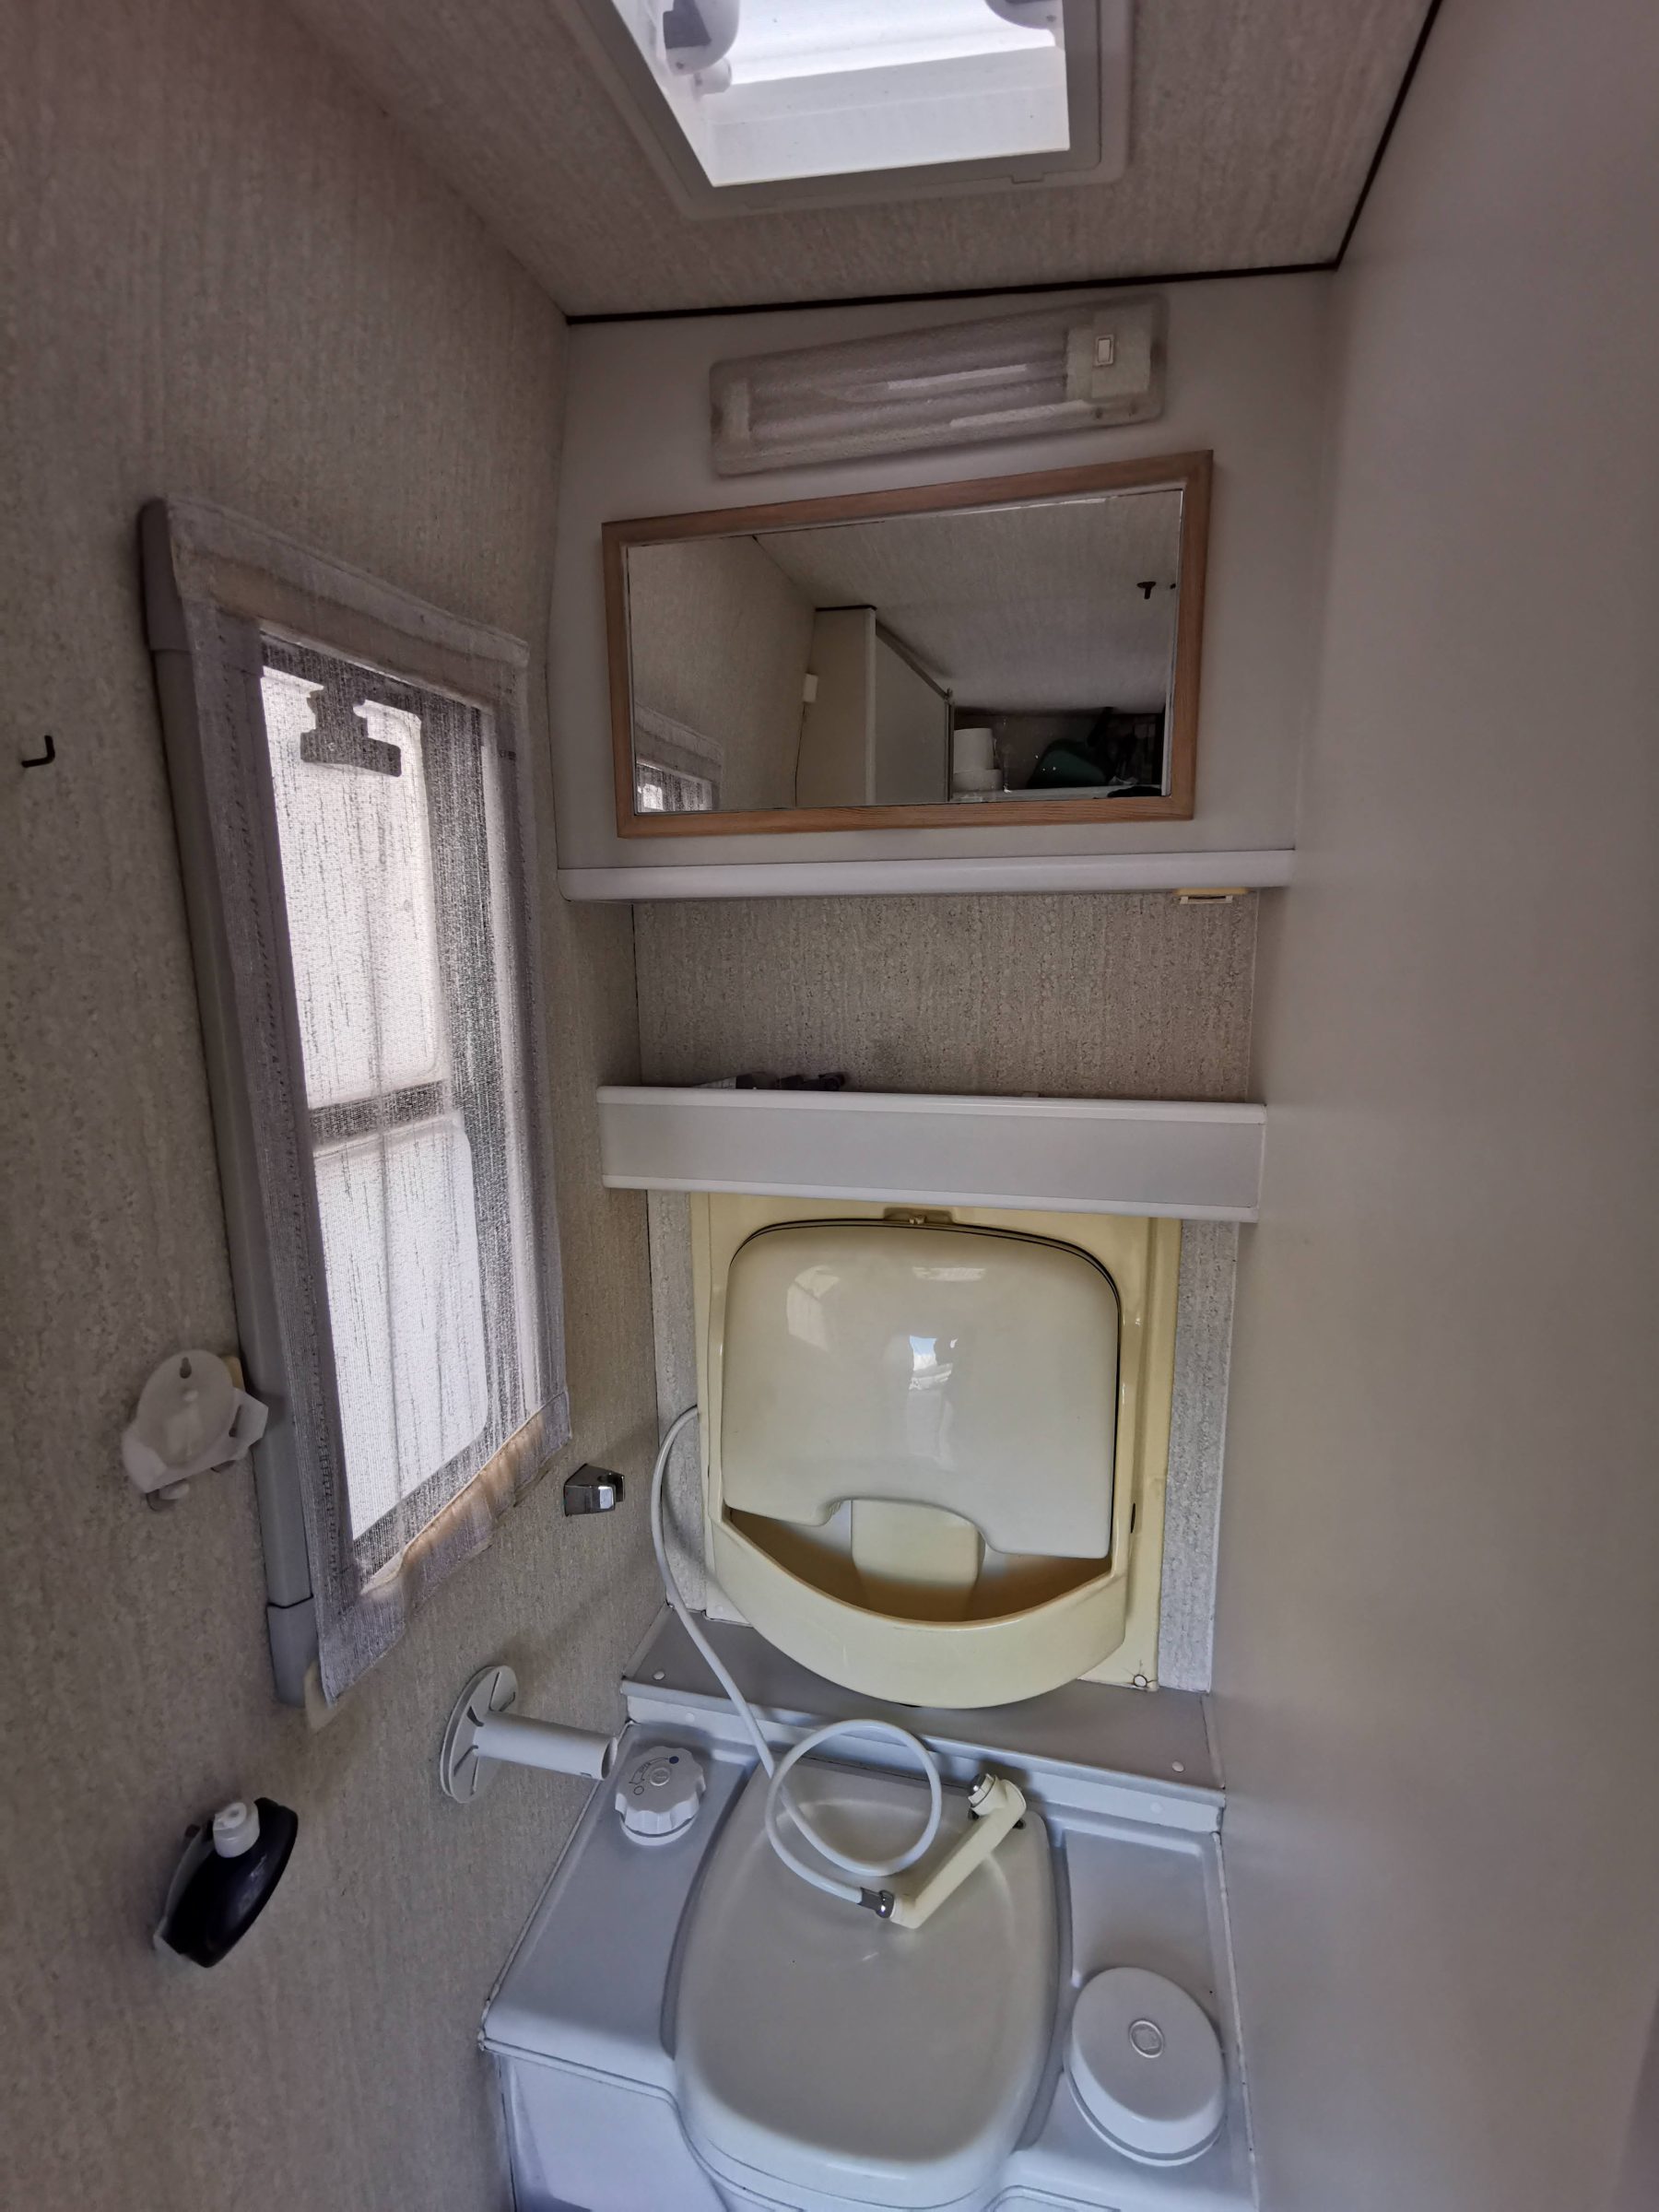 De badkamer / douchecabine in de camper voordat we begonnen - met de zeer gedateerde klap-wasbak